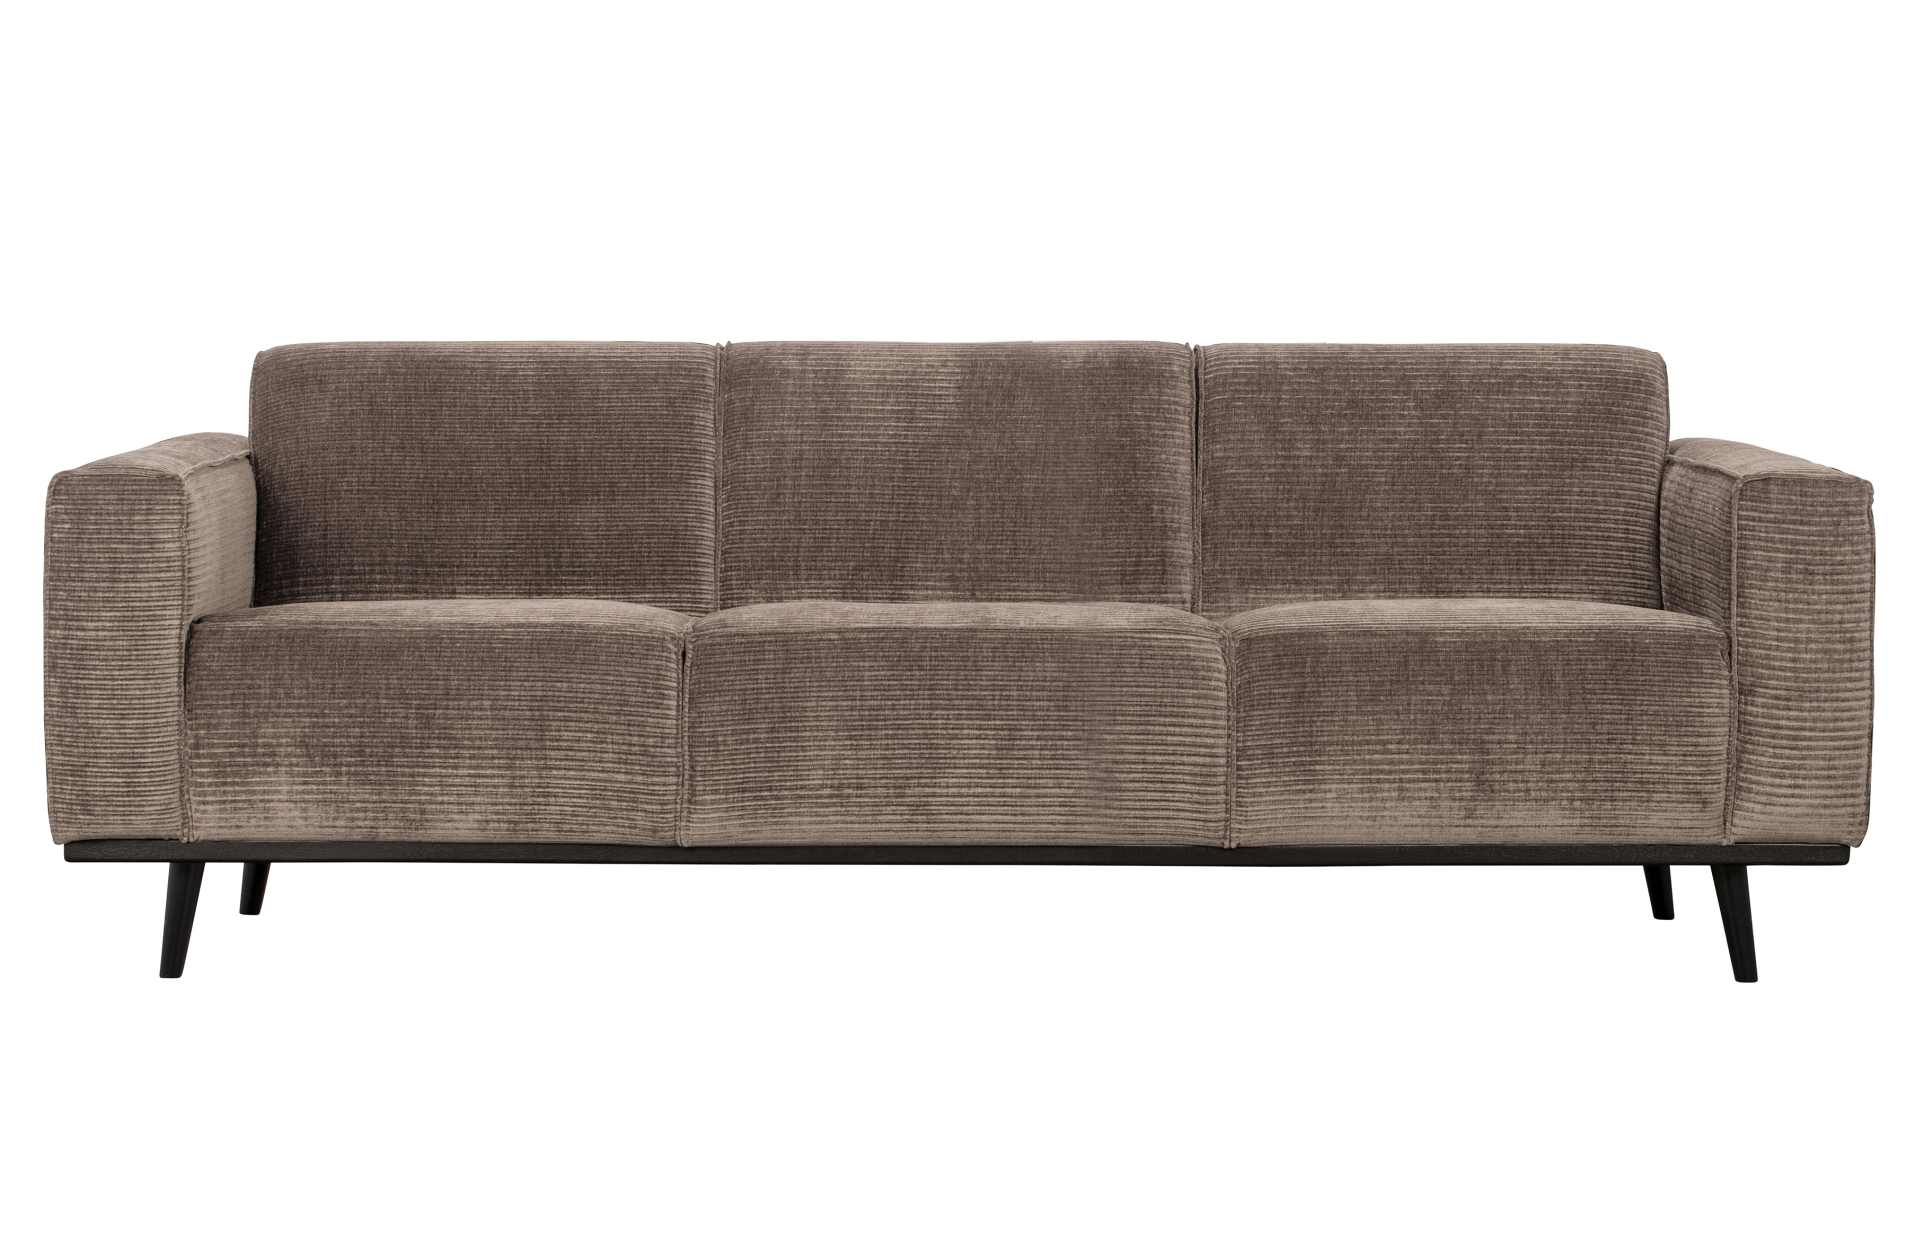 Das Sofa Statement überzeugt mit seinem modernen Design. Gefertigt wurde es aus gewebten Jacquard, welches einen Taupe Farbton besitzen. Das Gestell ist aus Birkenholz und hat eine schwarze Farbe. Das Sofa hat eine Breite von 230 cm.